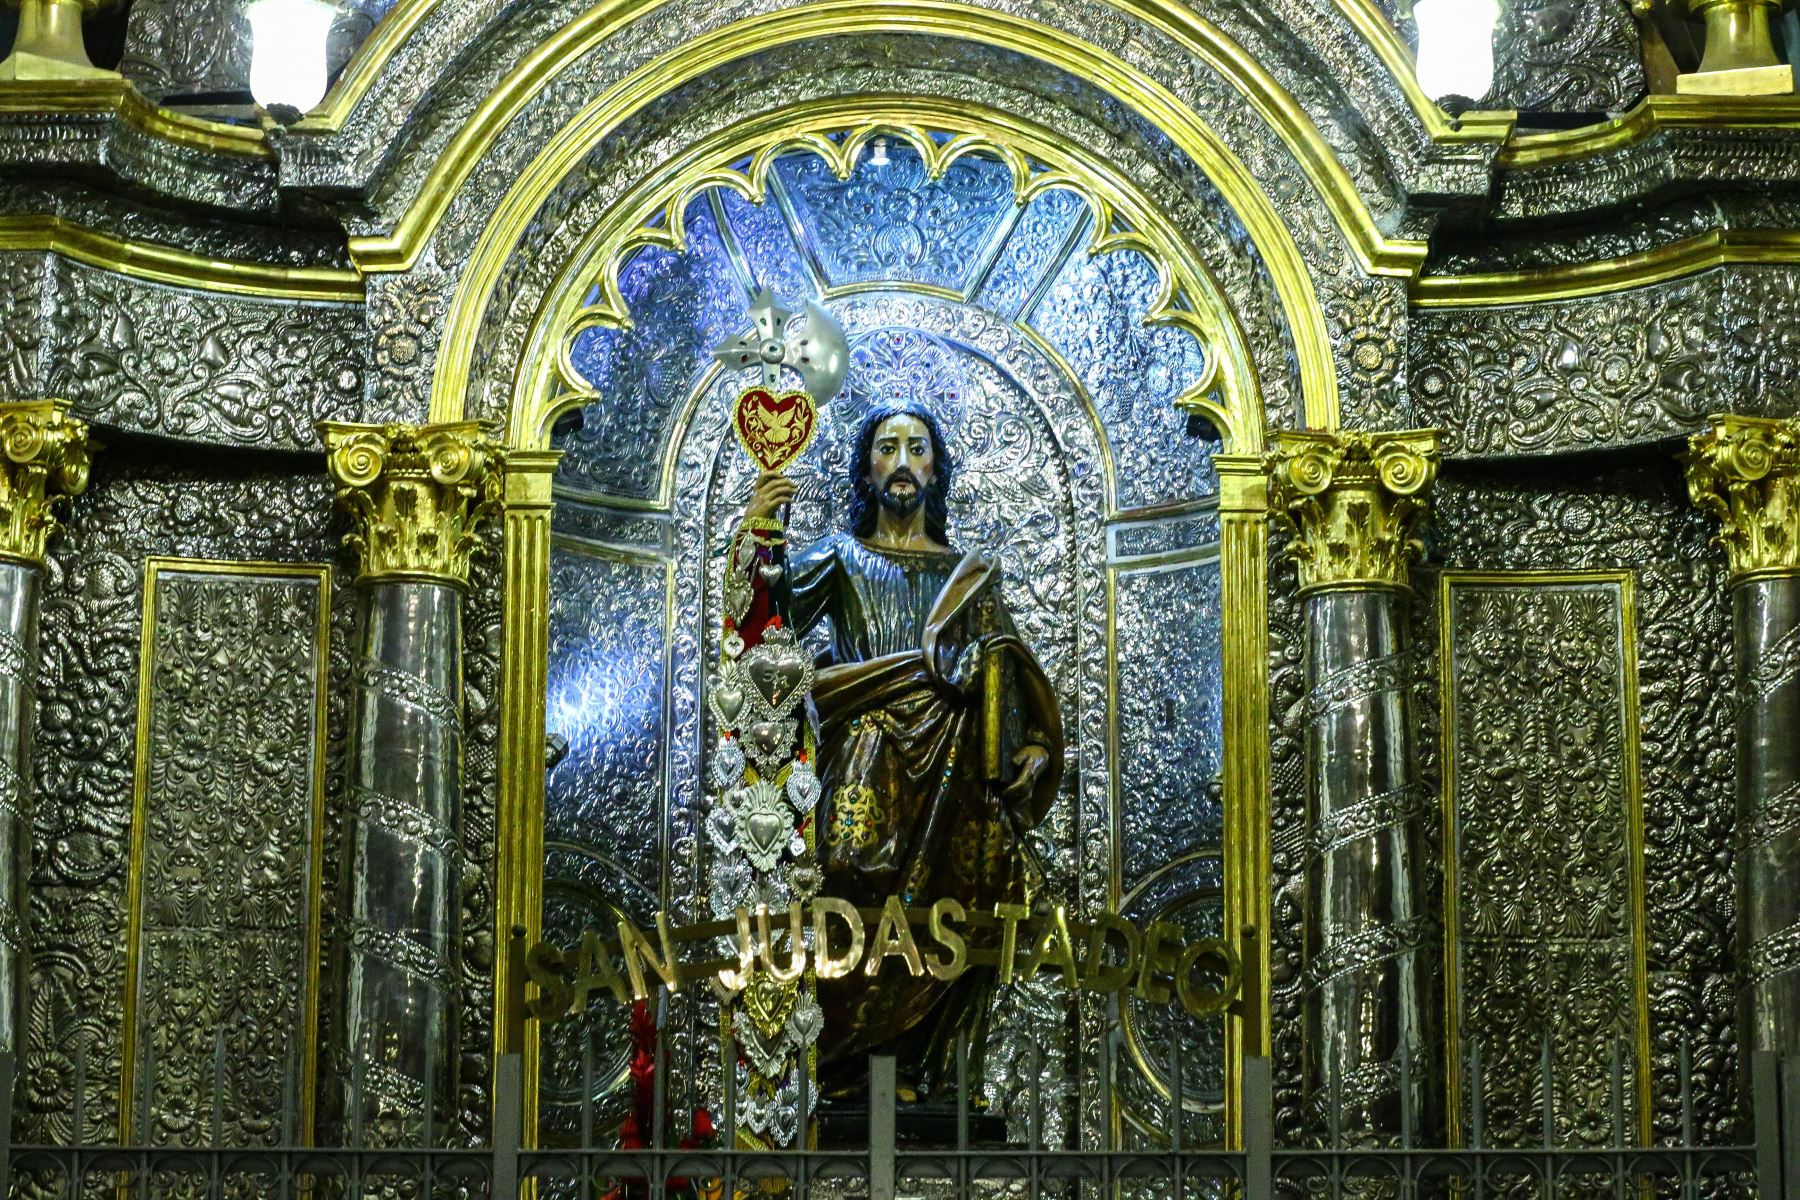 Todos los días 28 de cada mes se realiza la novena y misa solemne en honor a San Judas Tadeo. 
Foto: ANDINA/Eddy Ramos